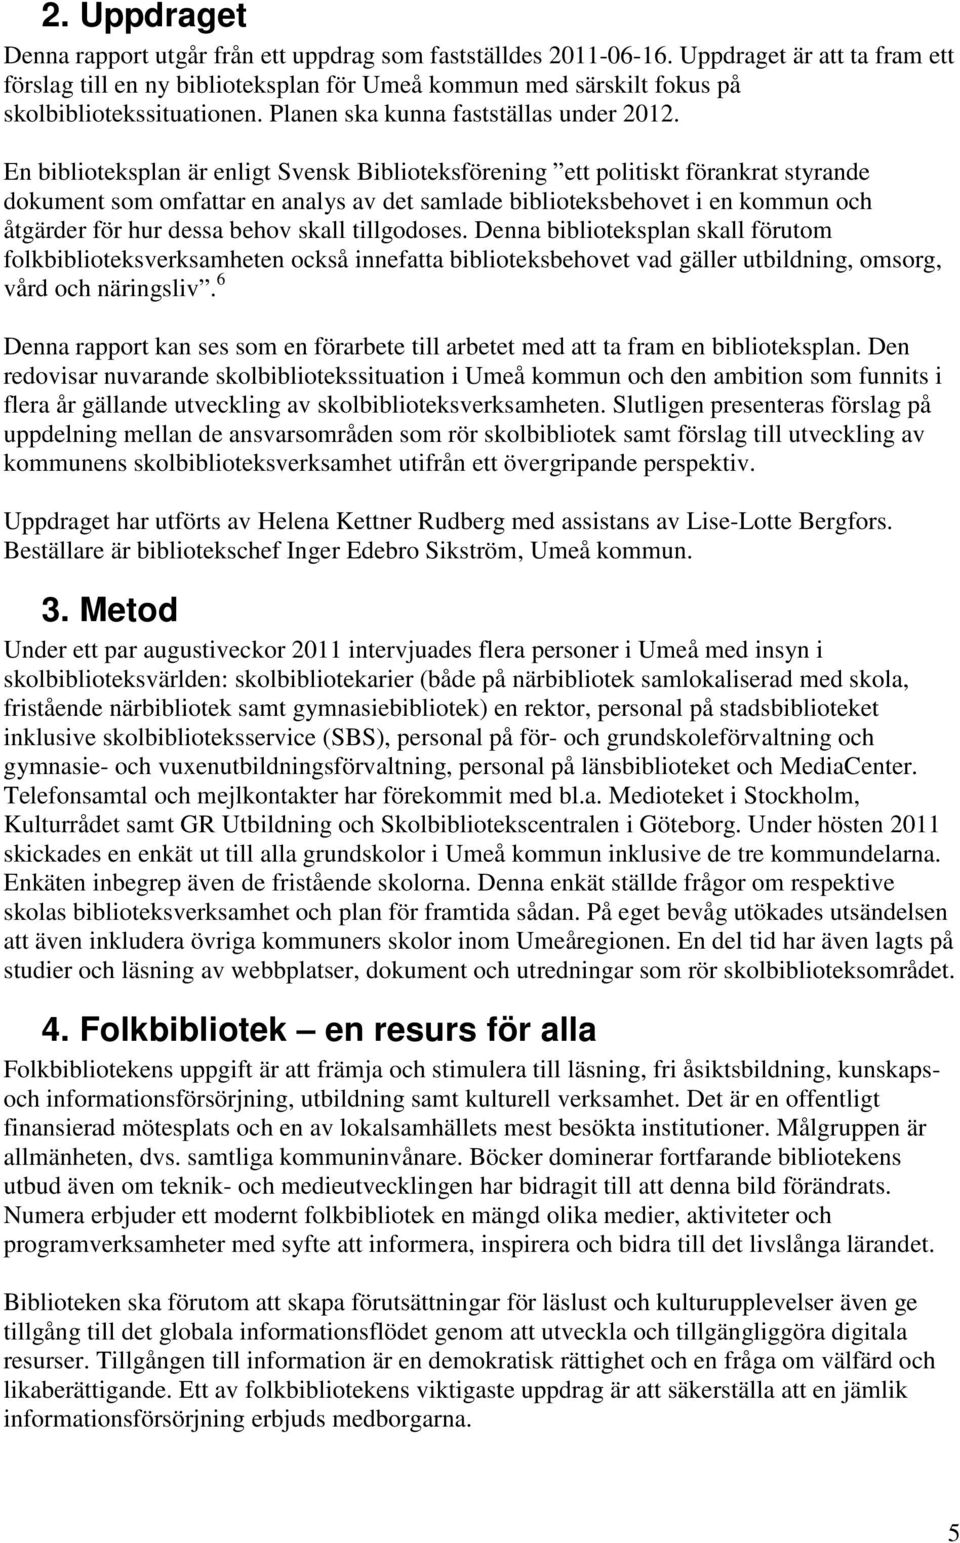 En biblioteksplan är enligt Svensk Biblioteksförening ett politiskt förankrat styrande dokument som omfattar en analys av det samlade biblioteksbehovet i en kommun och åtgärder för hur dessa behov